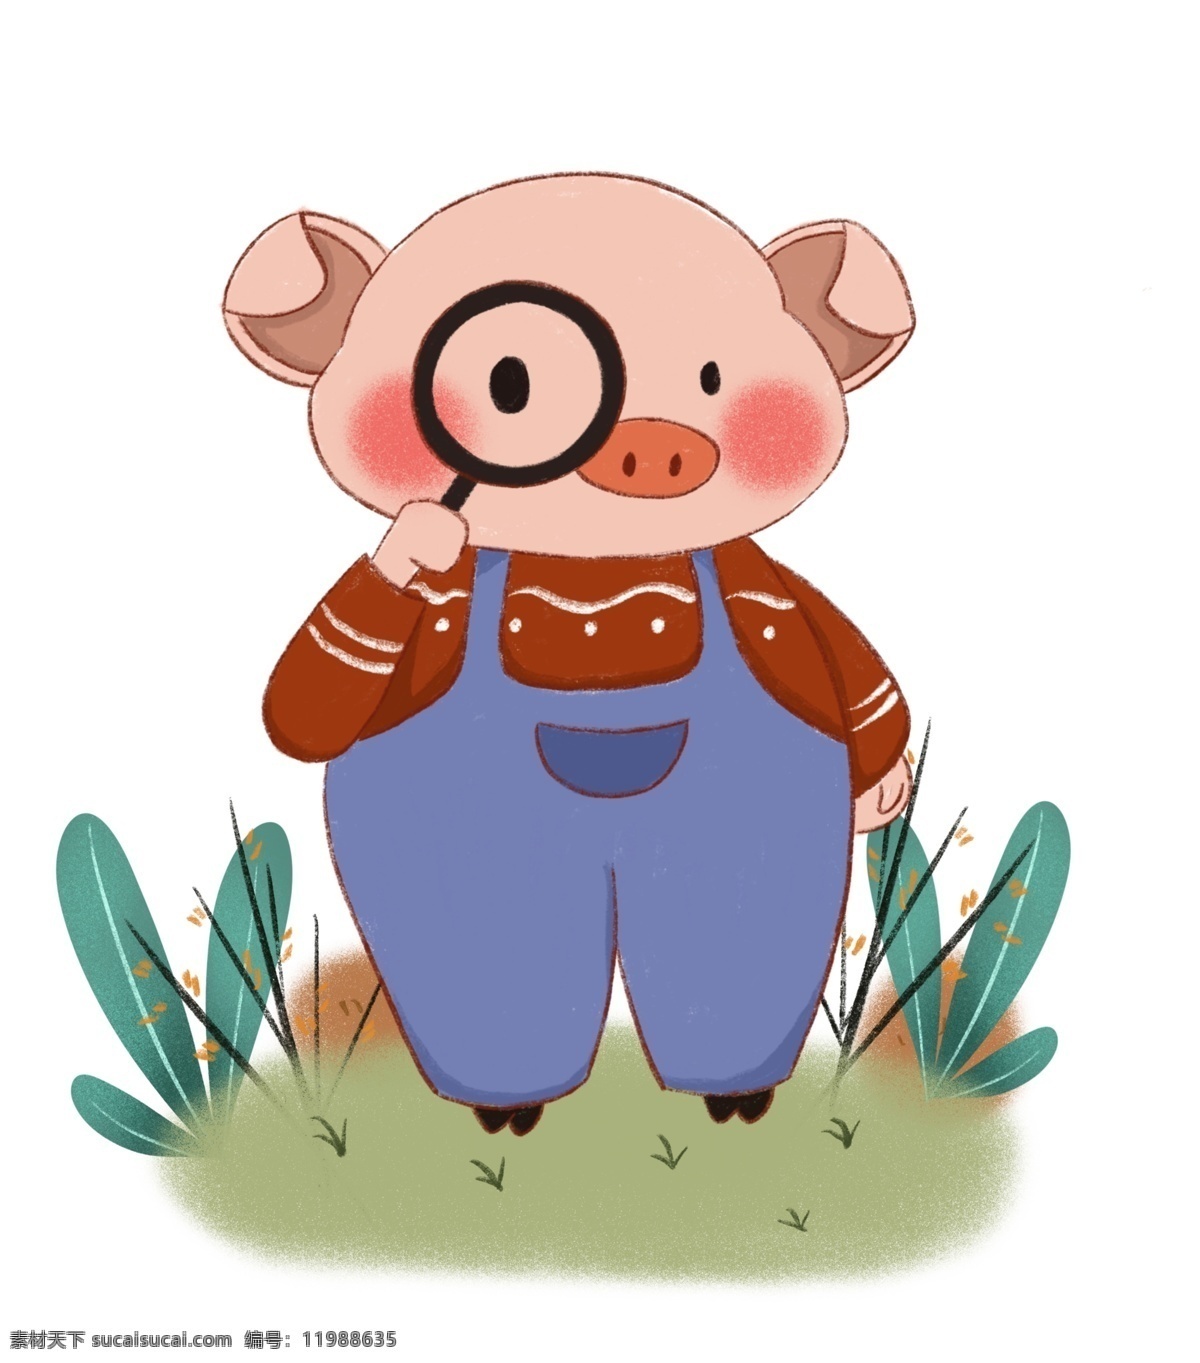 手绘 小 清新 放大镜 猪 新年 猪年 植物 绿植 可爱的猪 动物 手绘猪 小清新 蜡笔画 背带裤